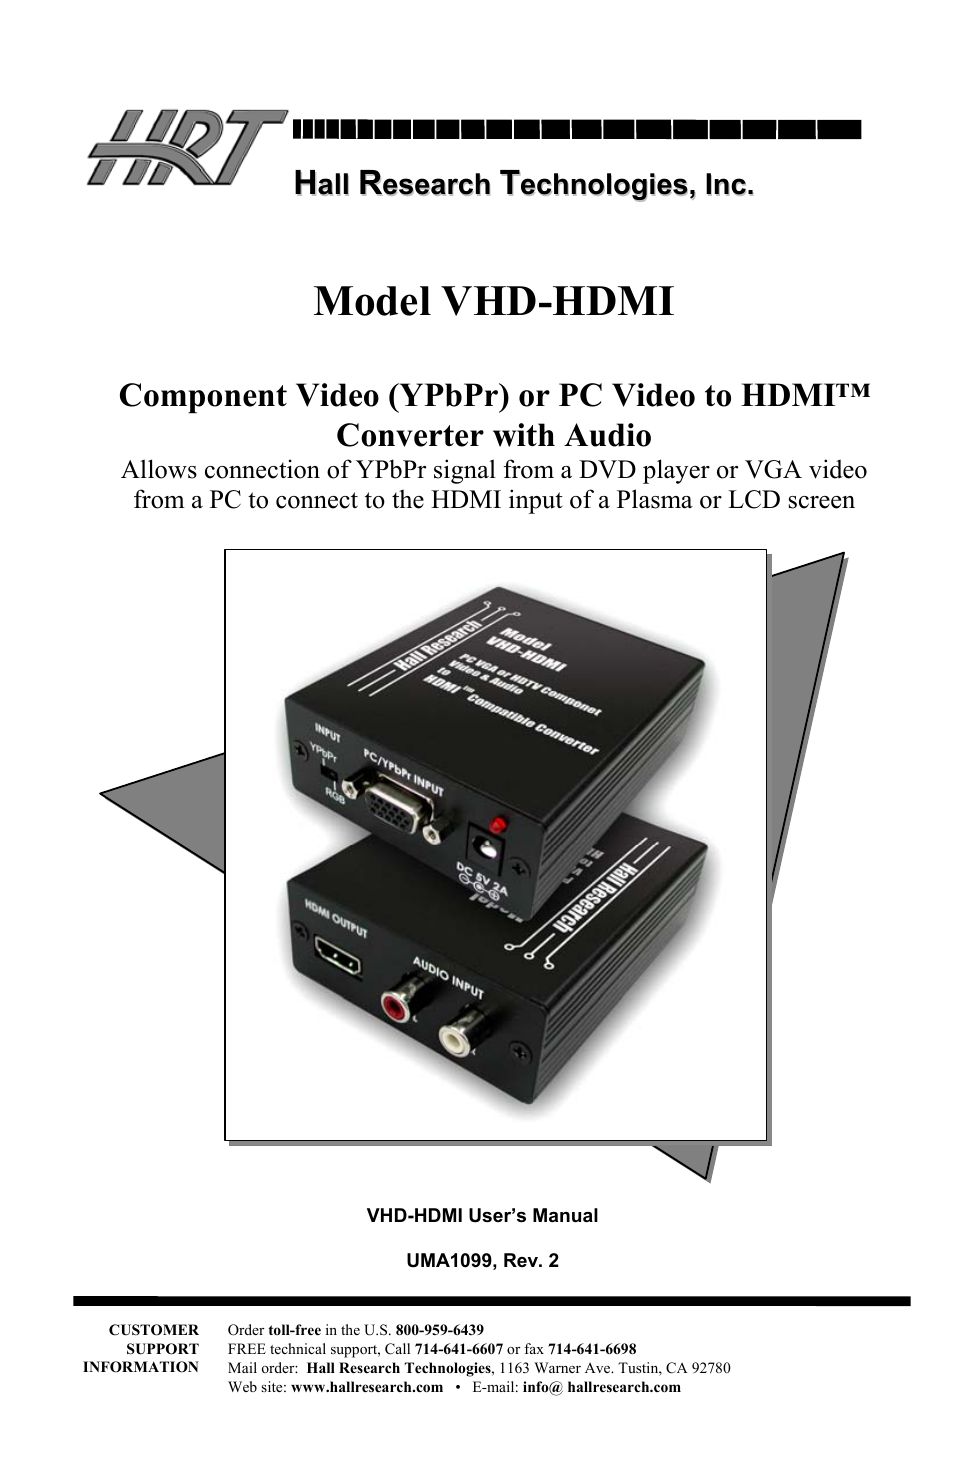 VHD-HDMI